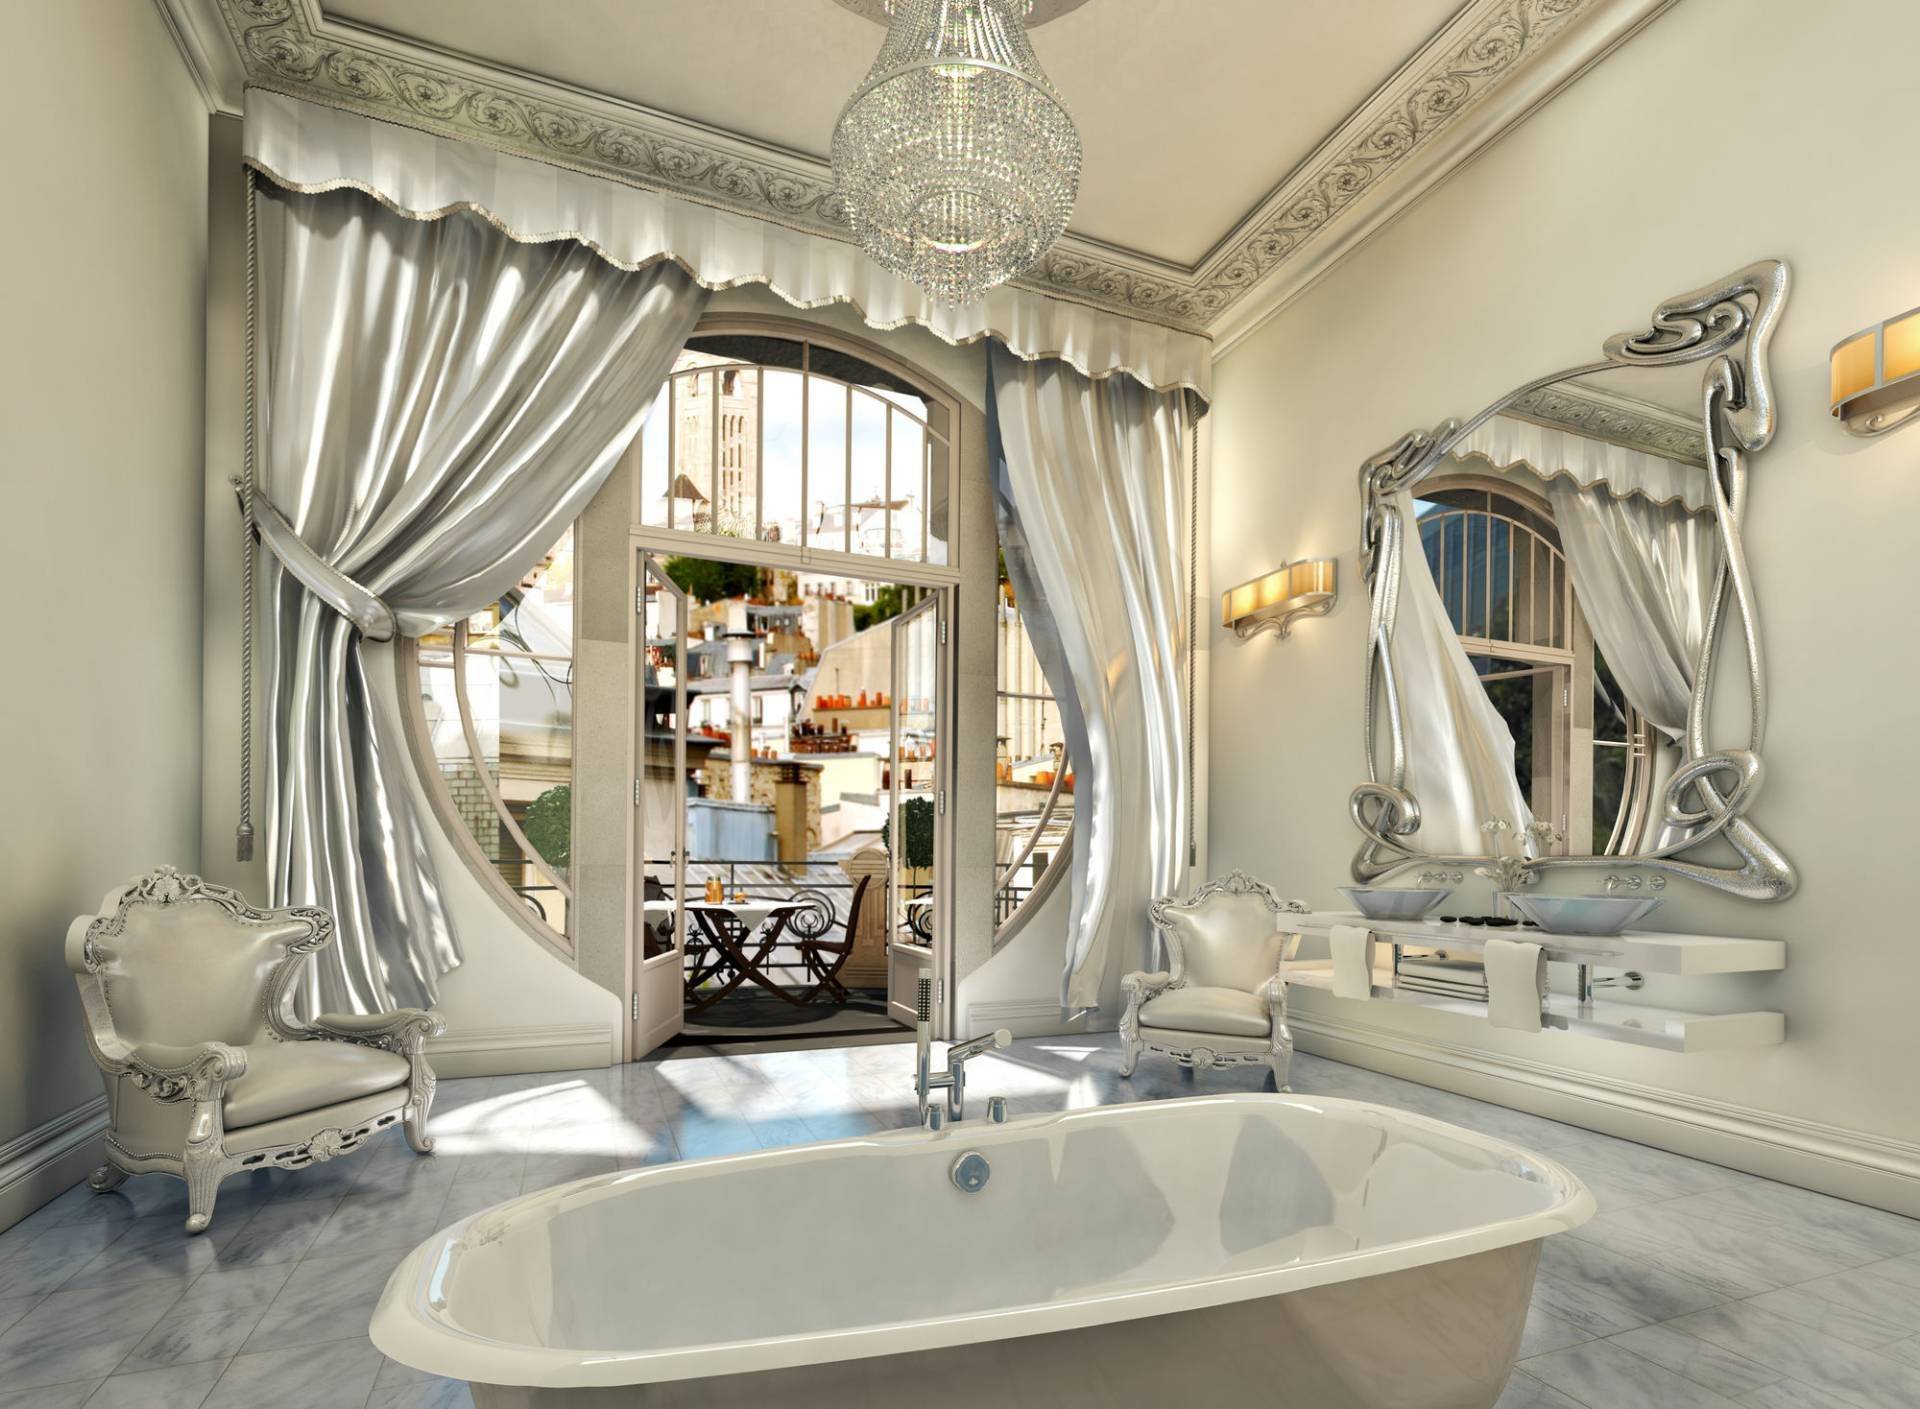 Ванная комната в стиле арт-деко, барокко, фото интерьеров